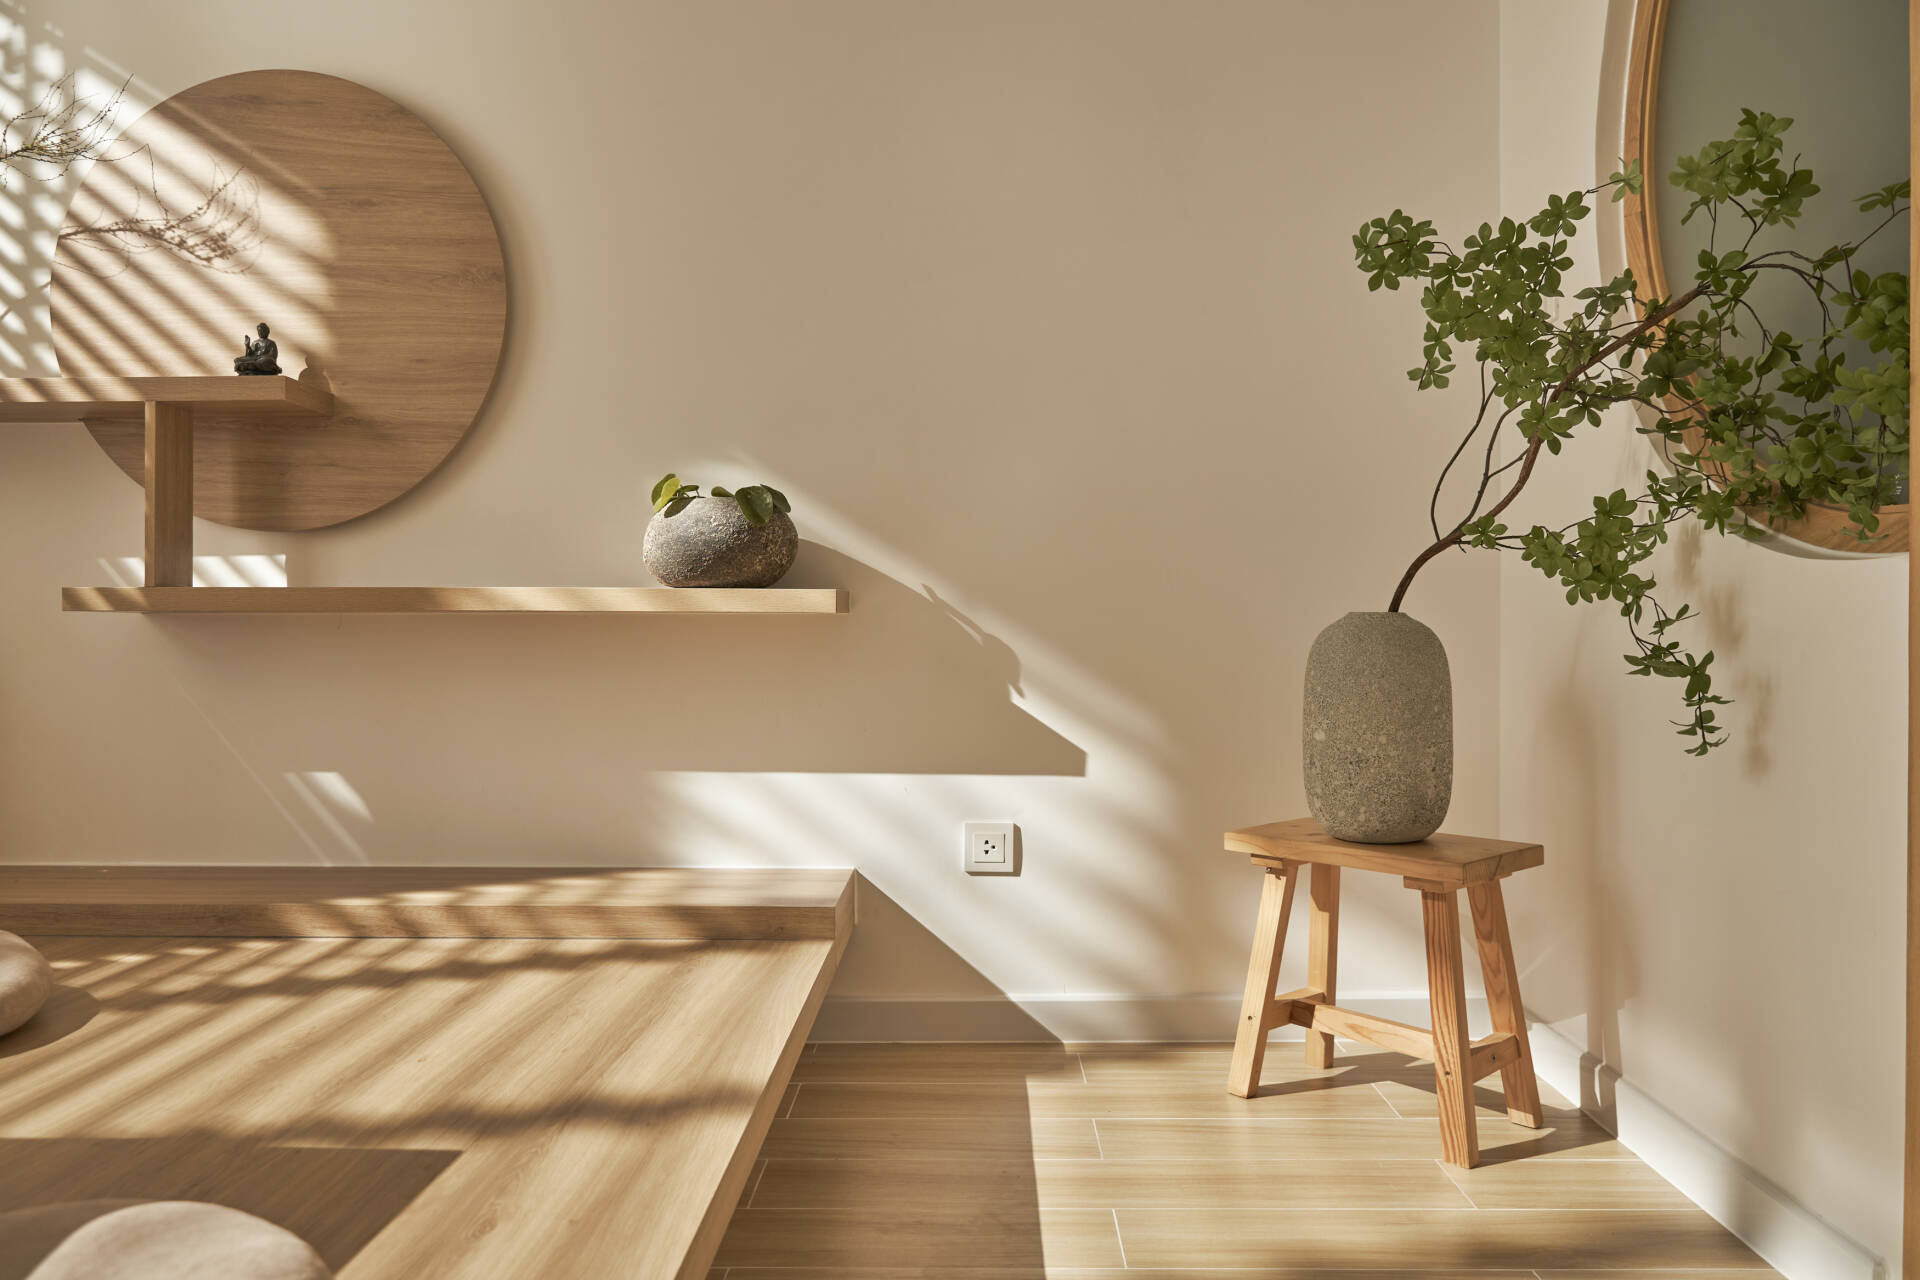 Vật liệu gỗ kết hợp với đá cuội là một tỏng những điểm nhấn độc đáo của ngôi nhà mang đậm văn hoá Nhật này